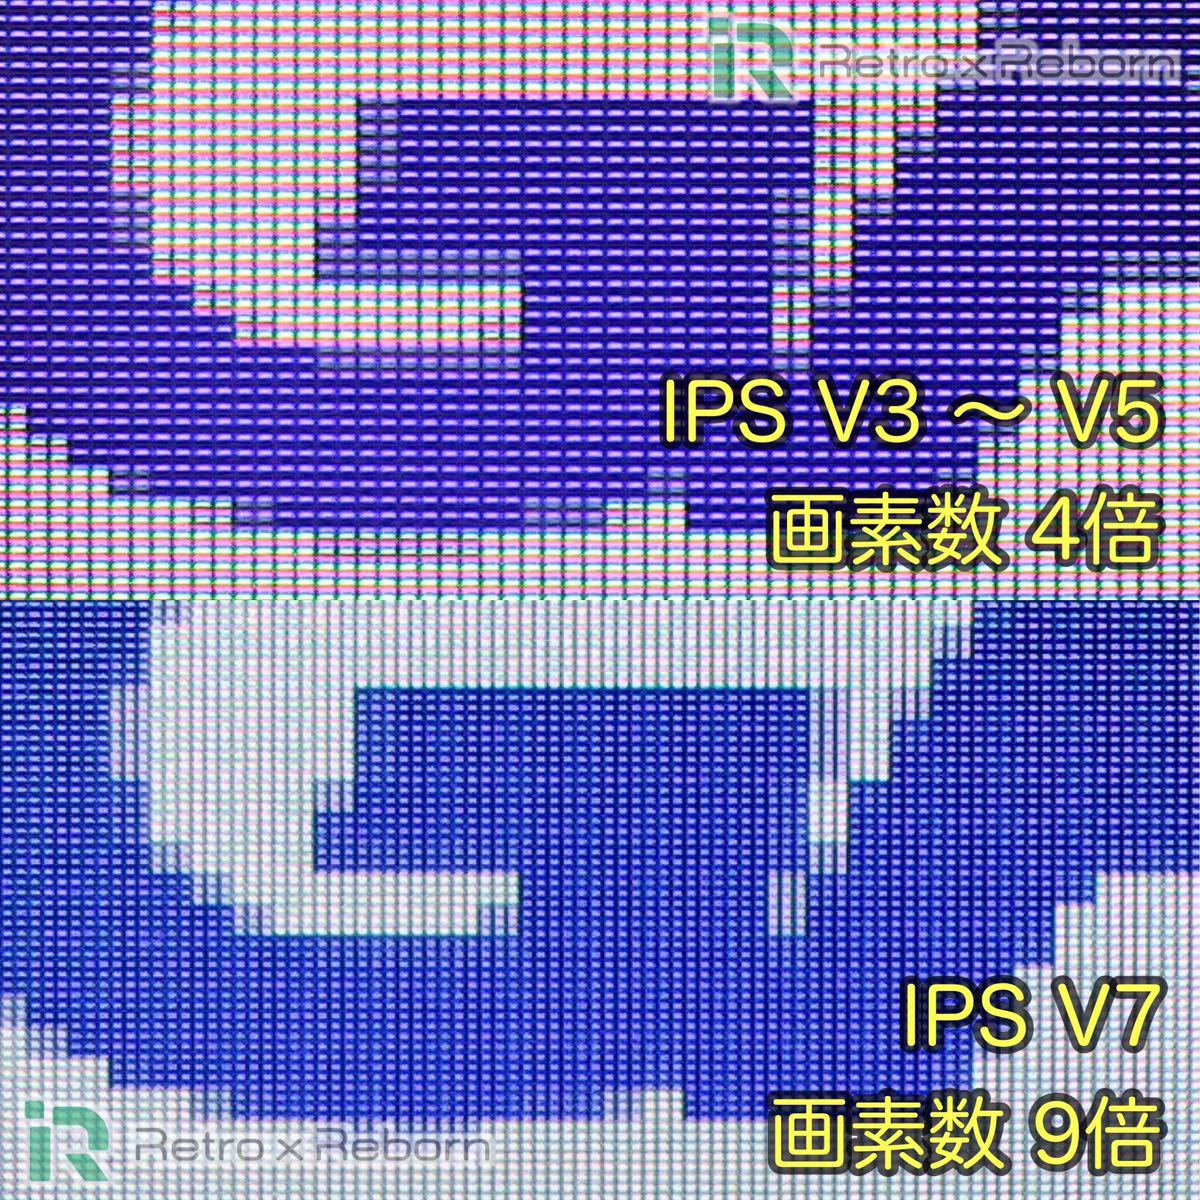 ゲームボーイアドバンス SP 本体 IPS V7 バックライト液晶搭載 045